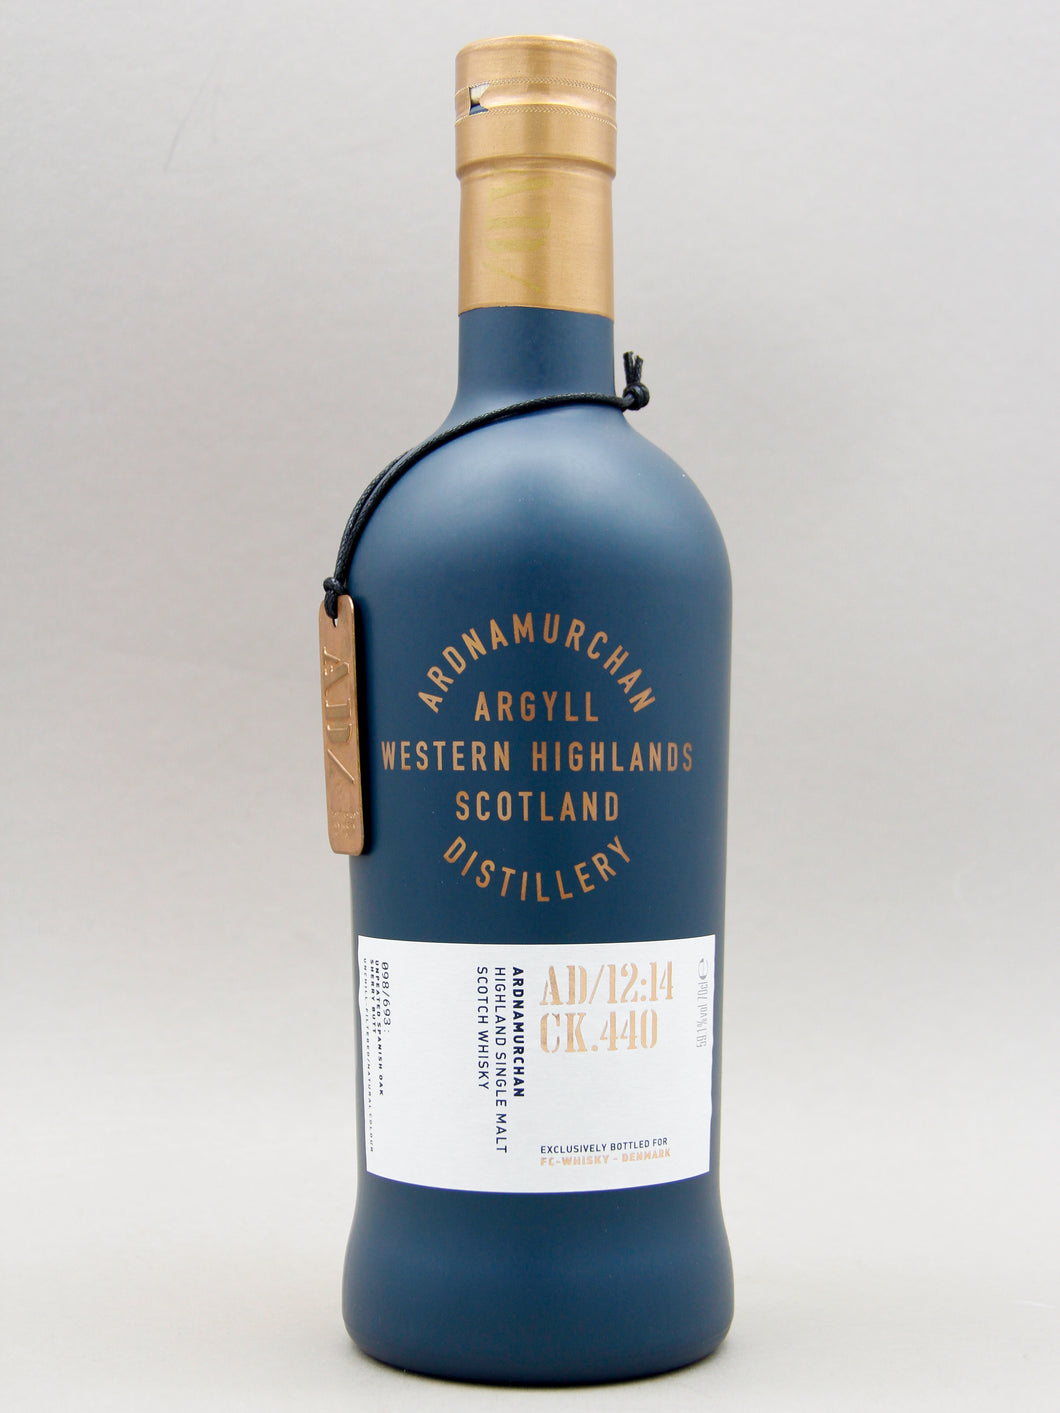 Ardnamurchan 12:14 CK.440, FC Whisky, Highland Single Malt Scotch Whisky (59.1%, 70cl)